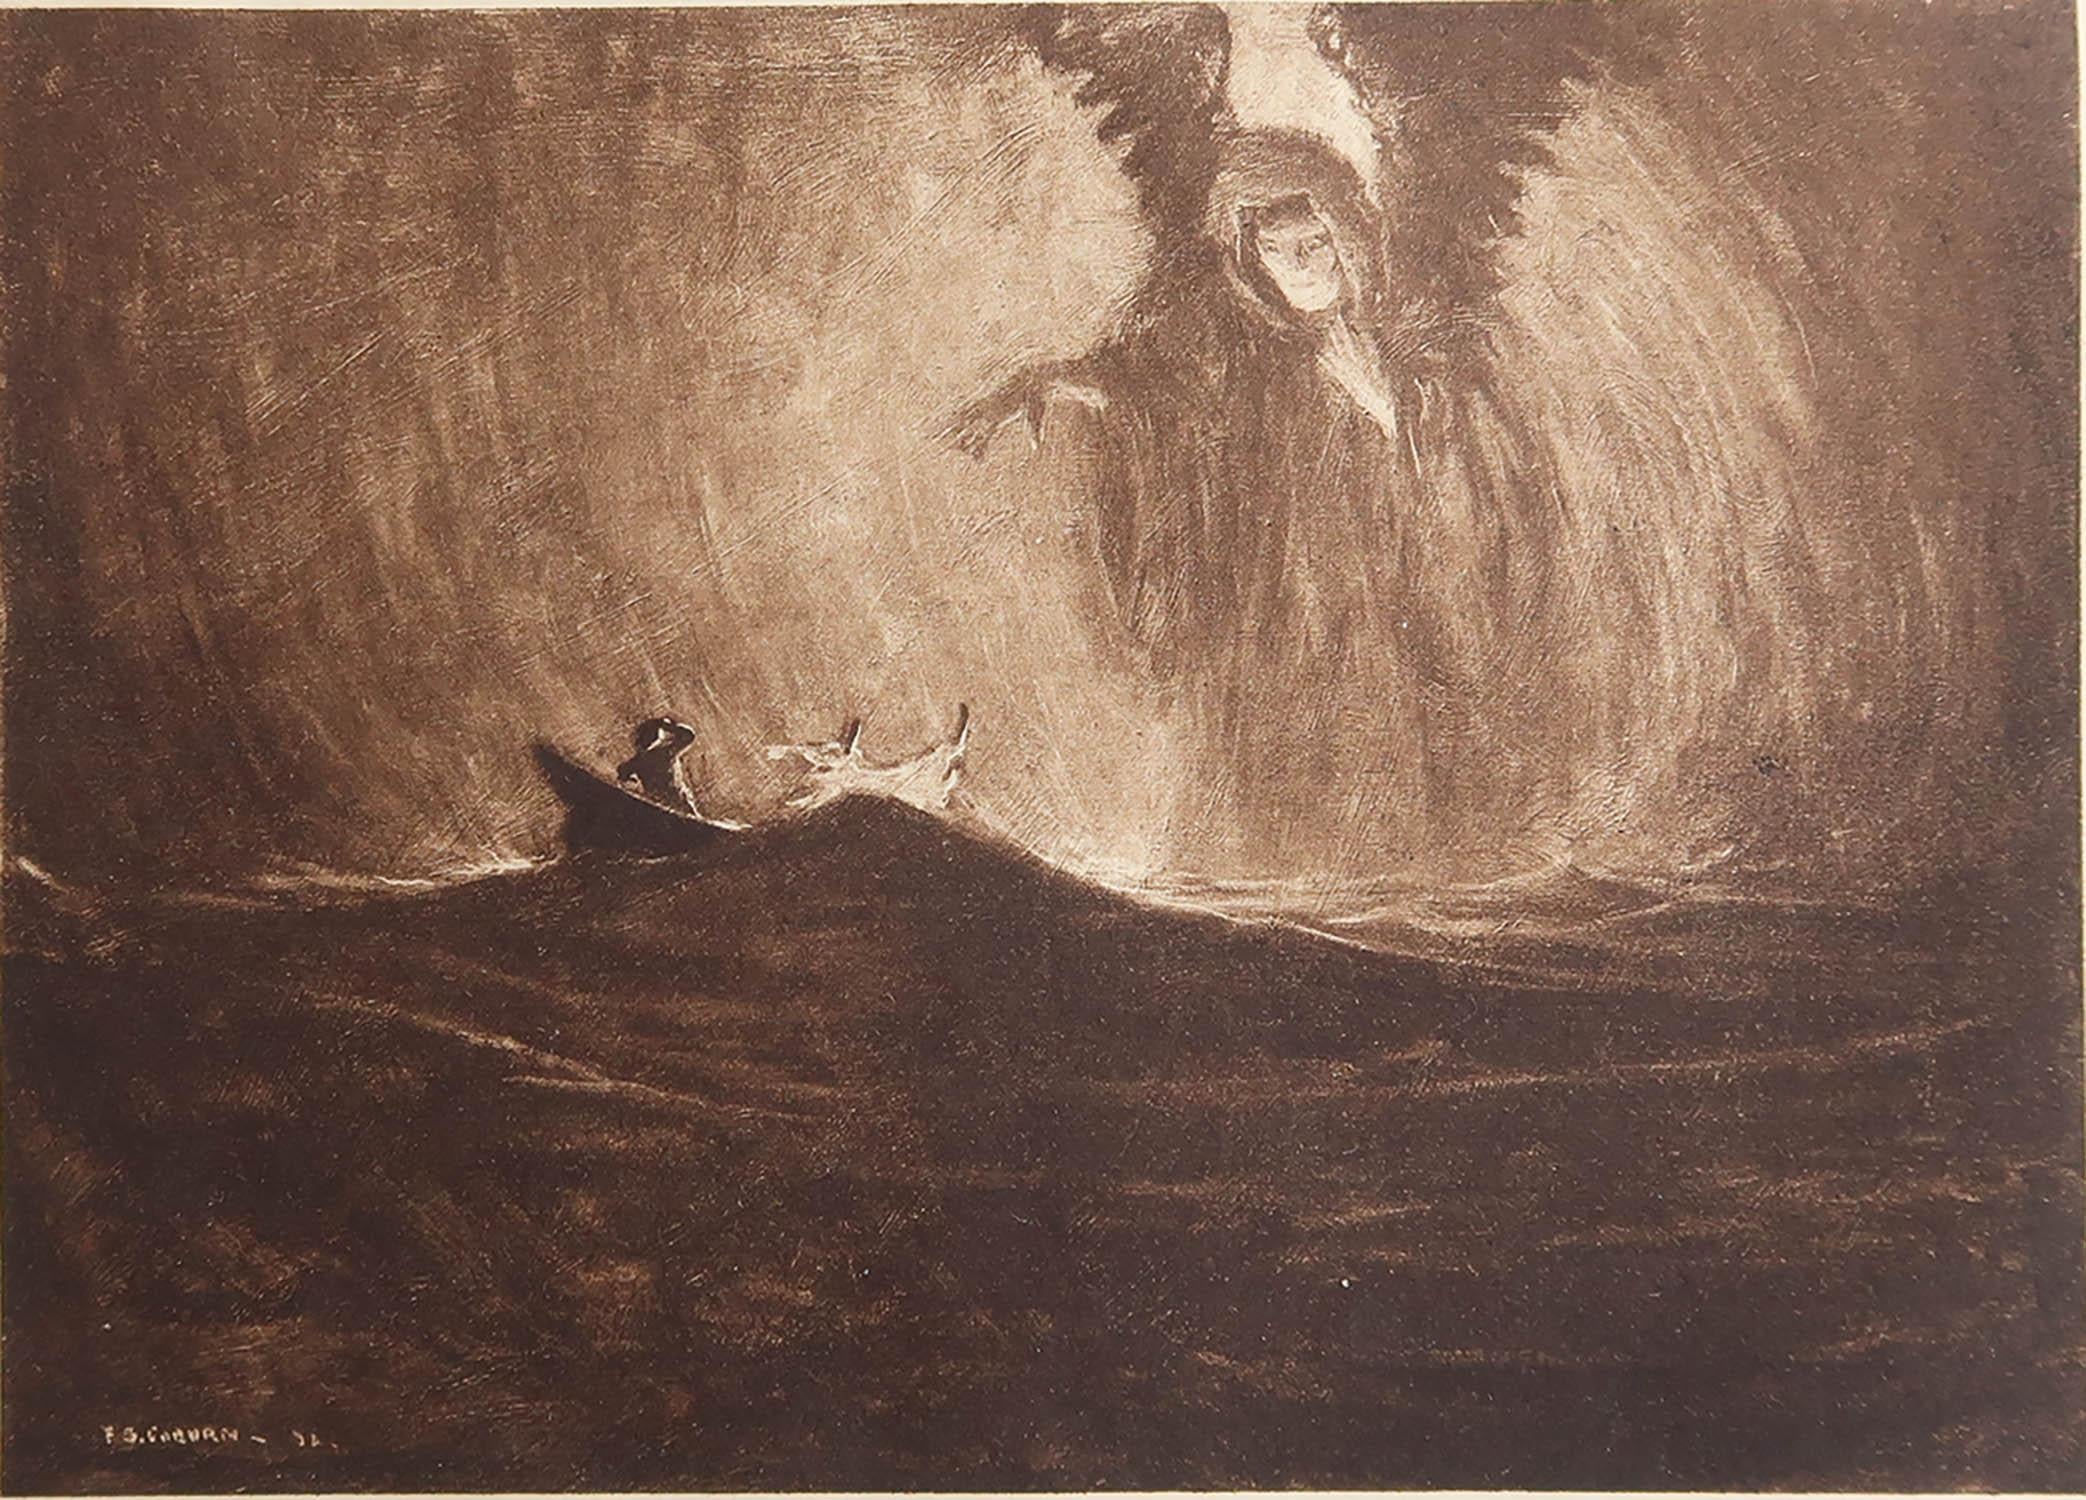 Sensationelles Bild von Frederick Simpson Coburn

In Anlehnung an einen meiner Lieblingskünstler, Goya

Fototiefdruck

Limitierte Auflage von 300 Stück. Dies ist Nr. 84

Aus den Gesamtwerken von Edgar Allen Poe

Herausgegeben von Putnam, New York.